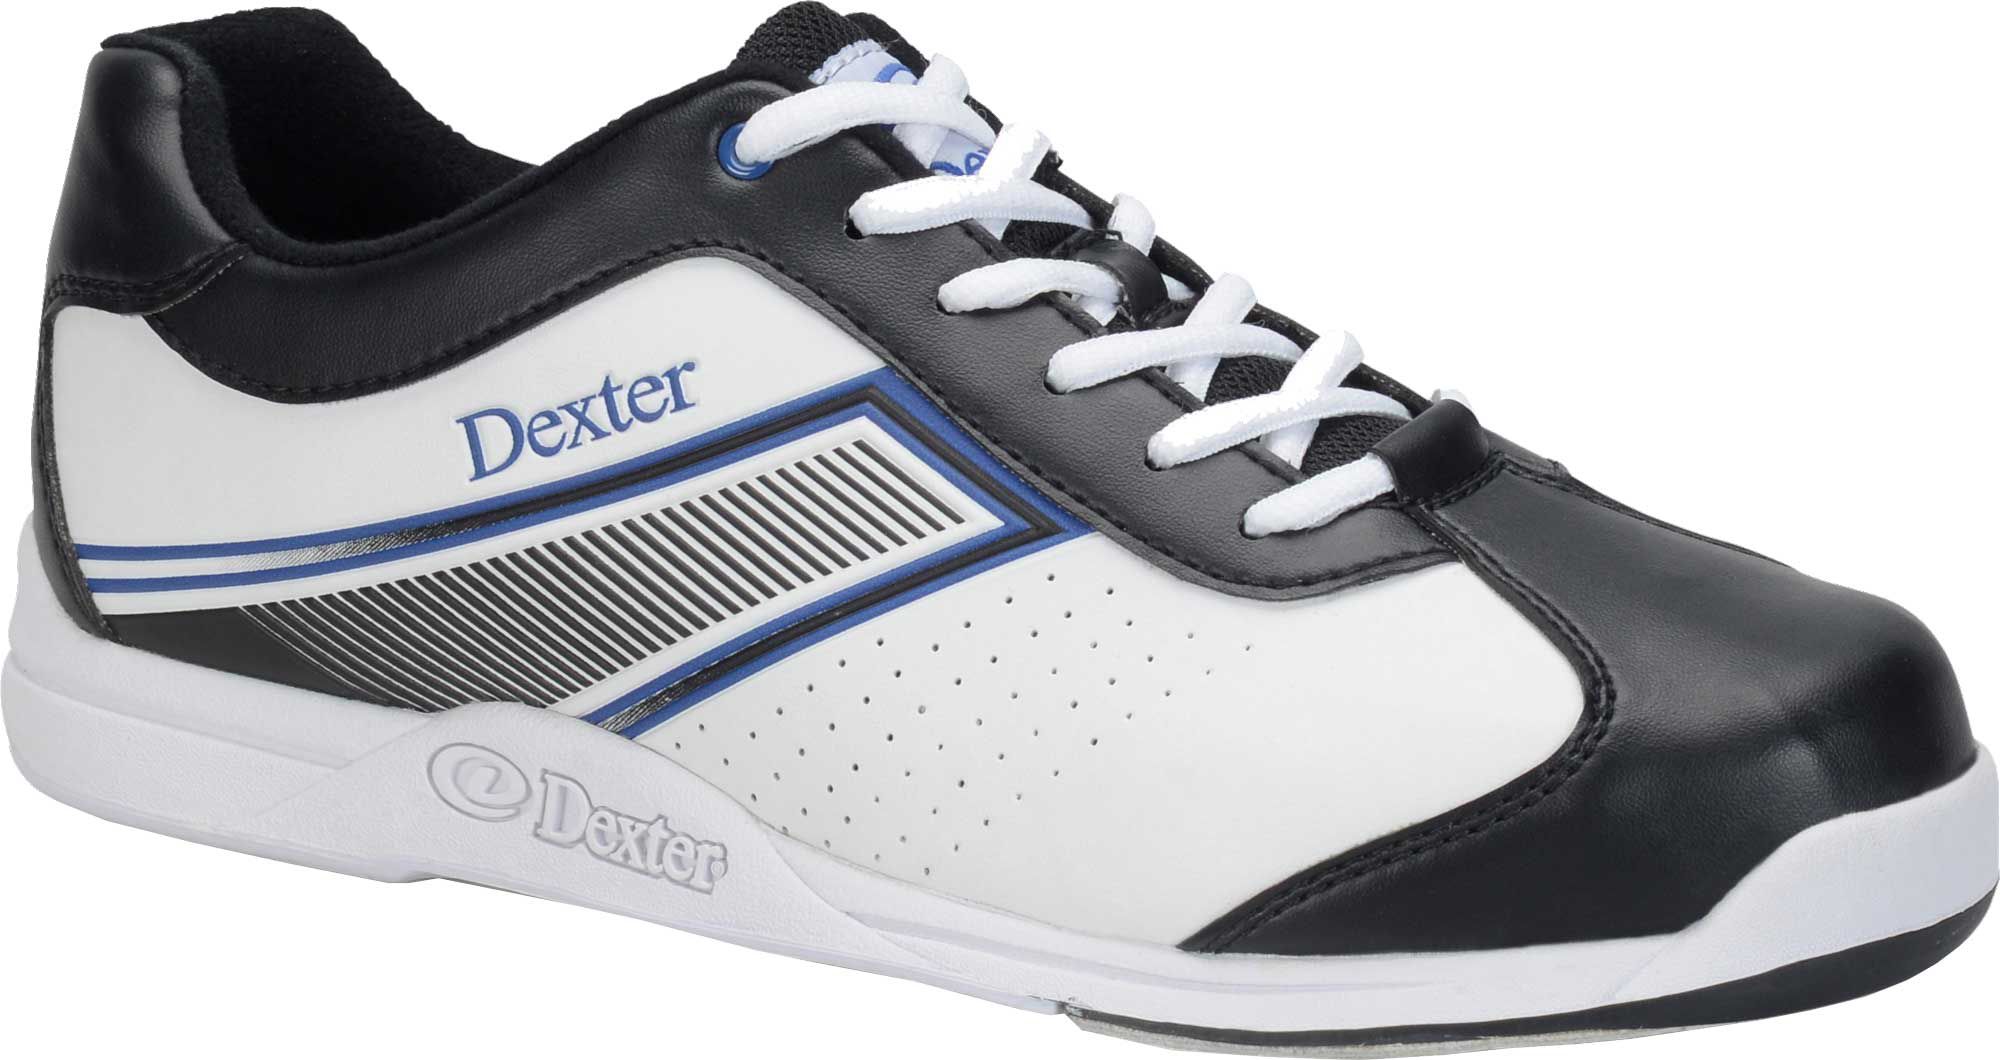 dexter katie bowling shoes